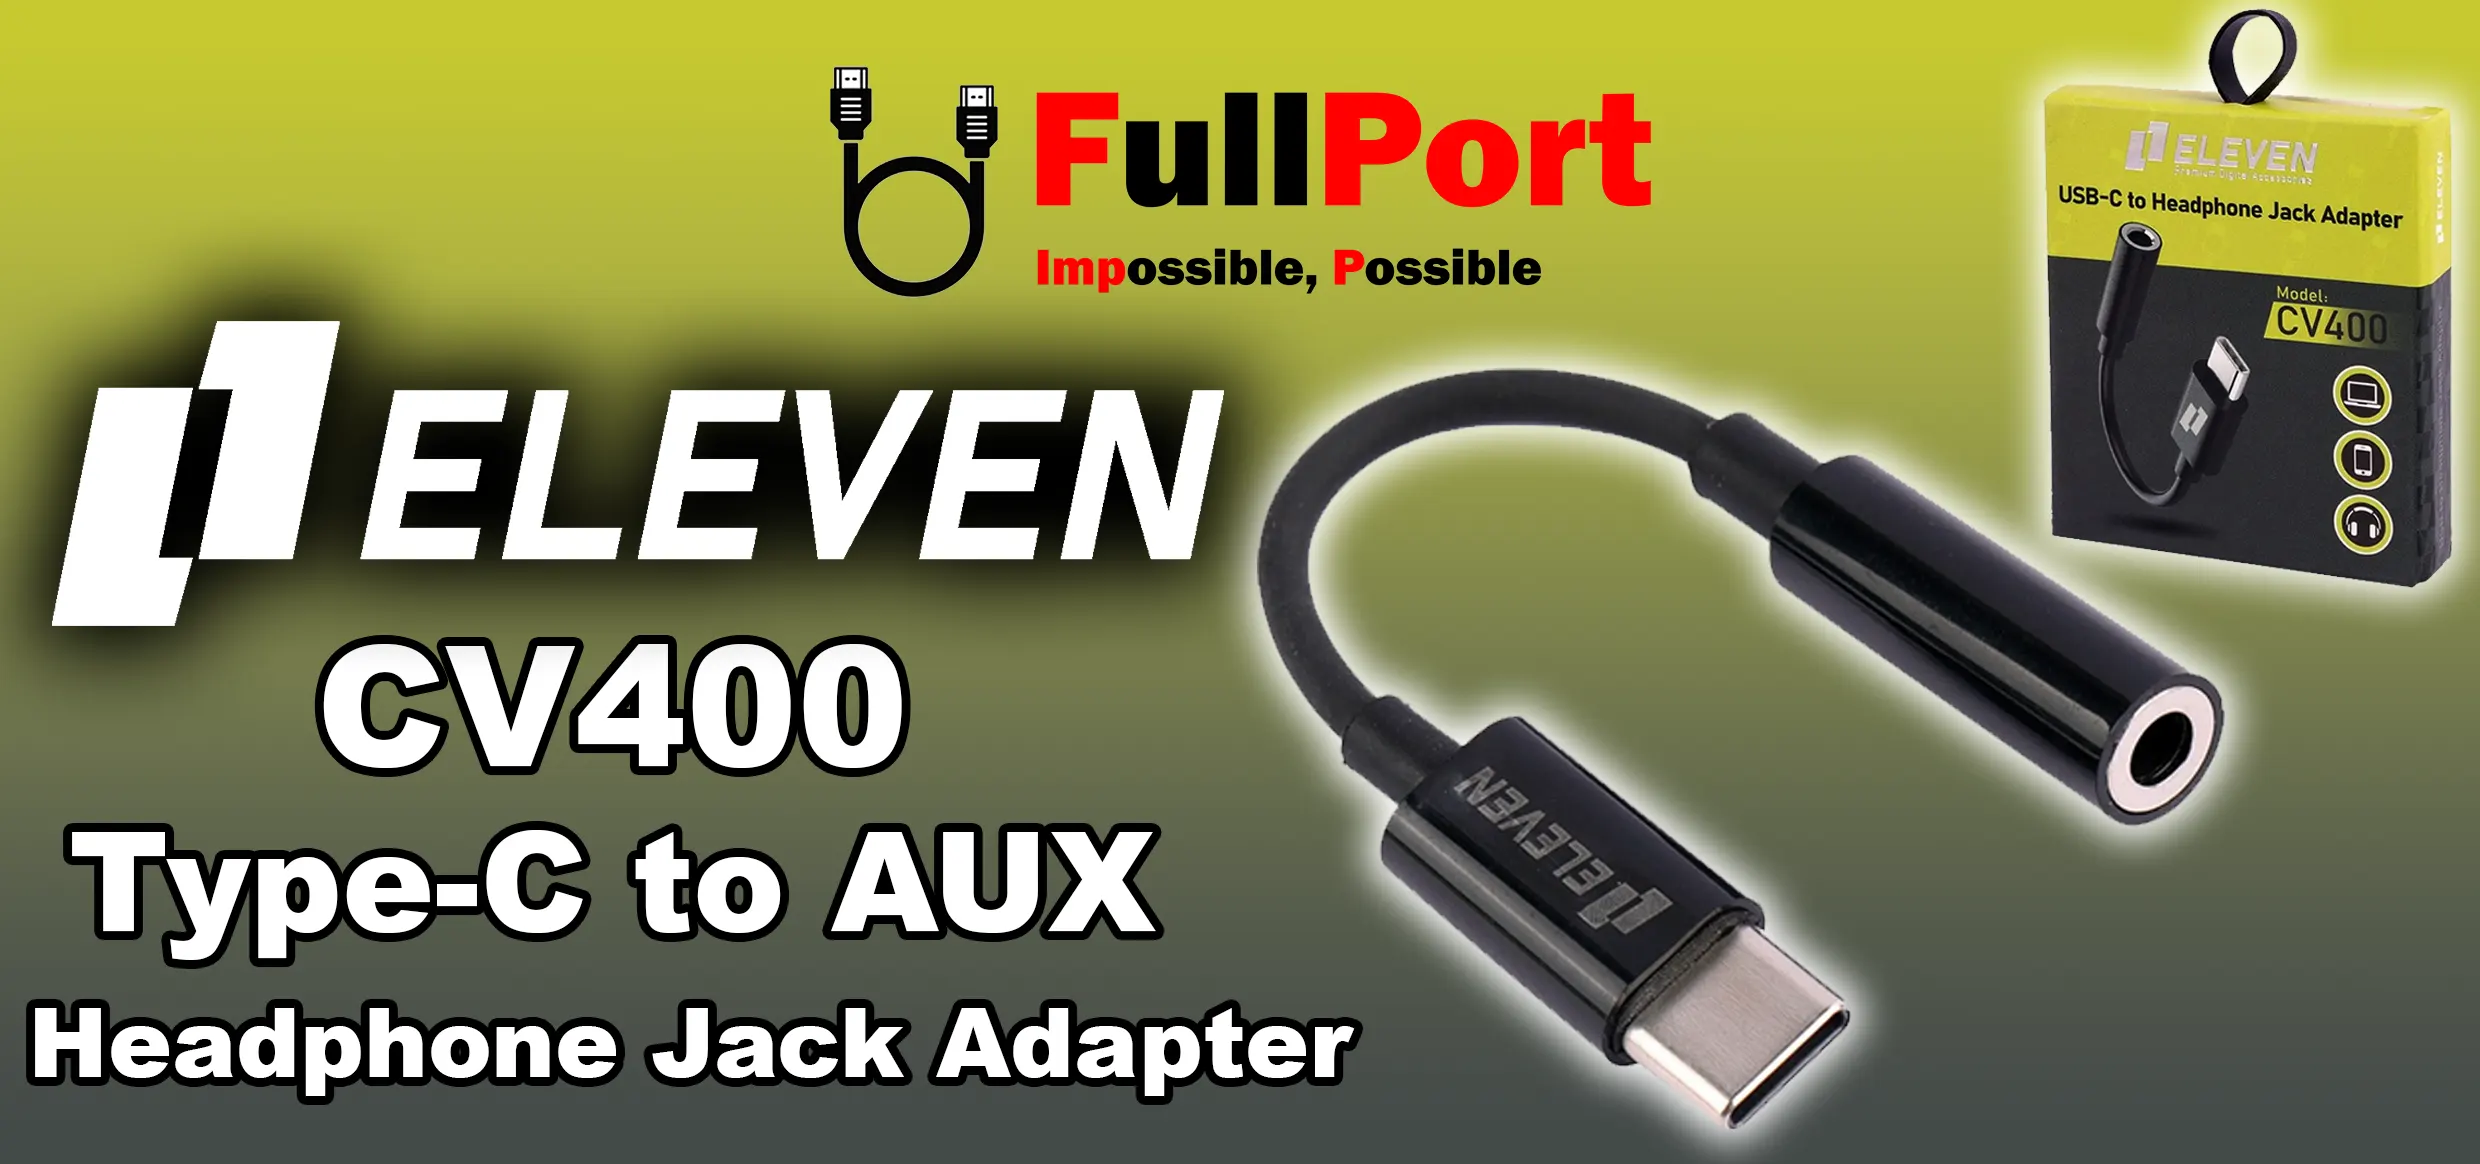 مشاهده و خرید مبدل Type-C به AUX Headphone Jack Adapter ایلون | ELEVEN مدل CV400 با گارانتی ایلون 1 سال از فروشگاه اینترنتی فول پورت